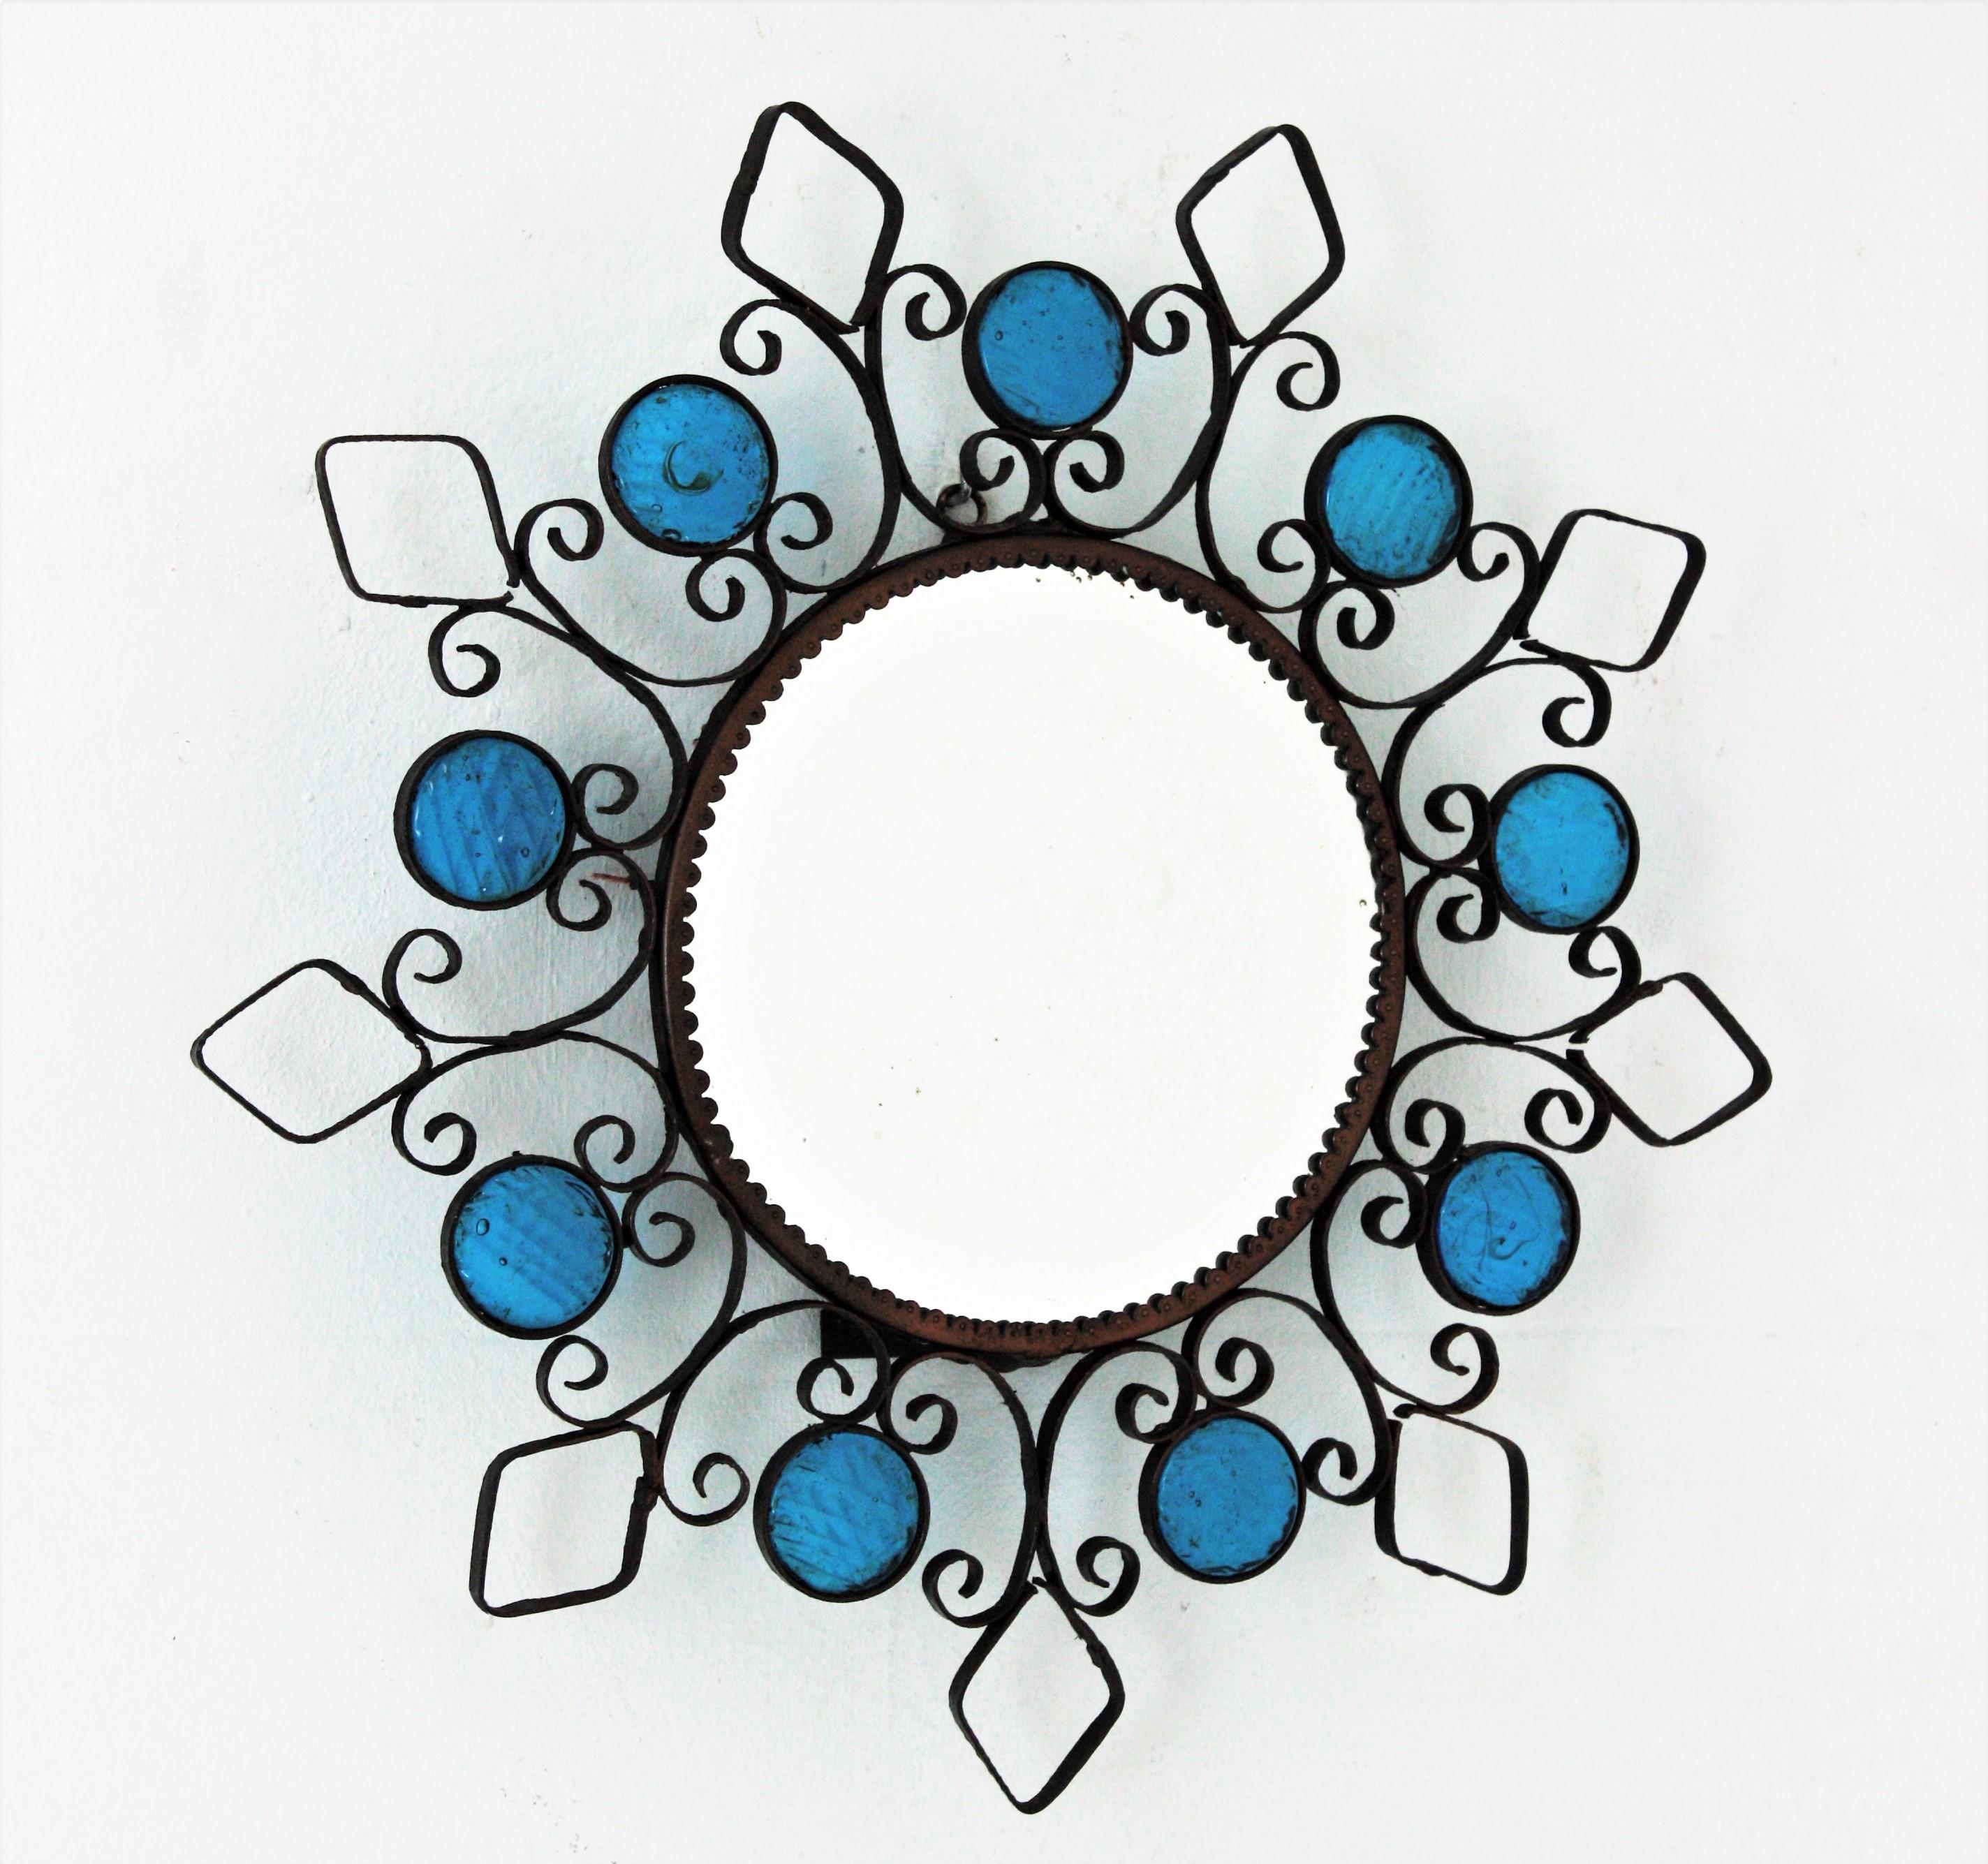 Schöner Spiegel aus Schmiedeeisen mit Sonnenschliff und blauen Glaskreisen, Spanien, 1950er Jahre.
Dieser beleuchtete Wandspiegel besteht aus einem schmiedeeisernen Rahmen mit verschnörkelten Details, Rauten und Kreisen, die von kleinen blauen